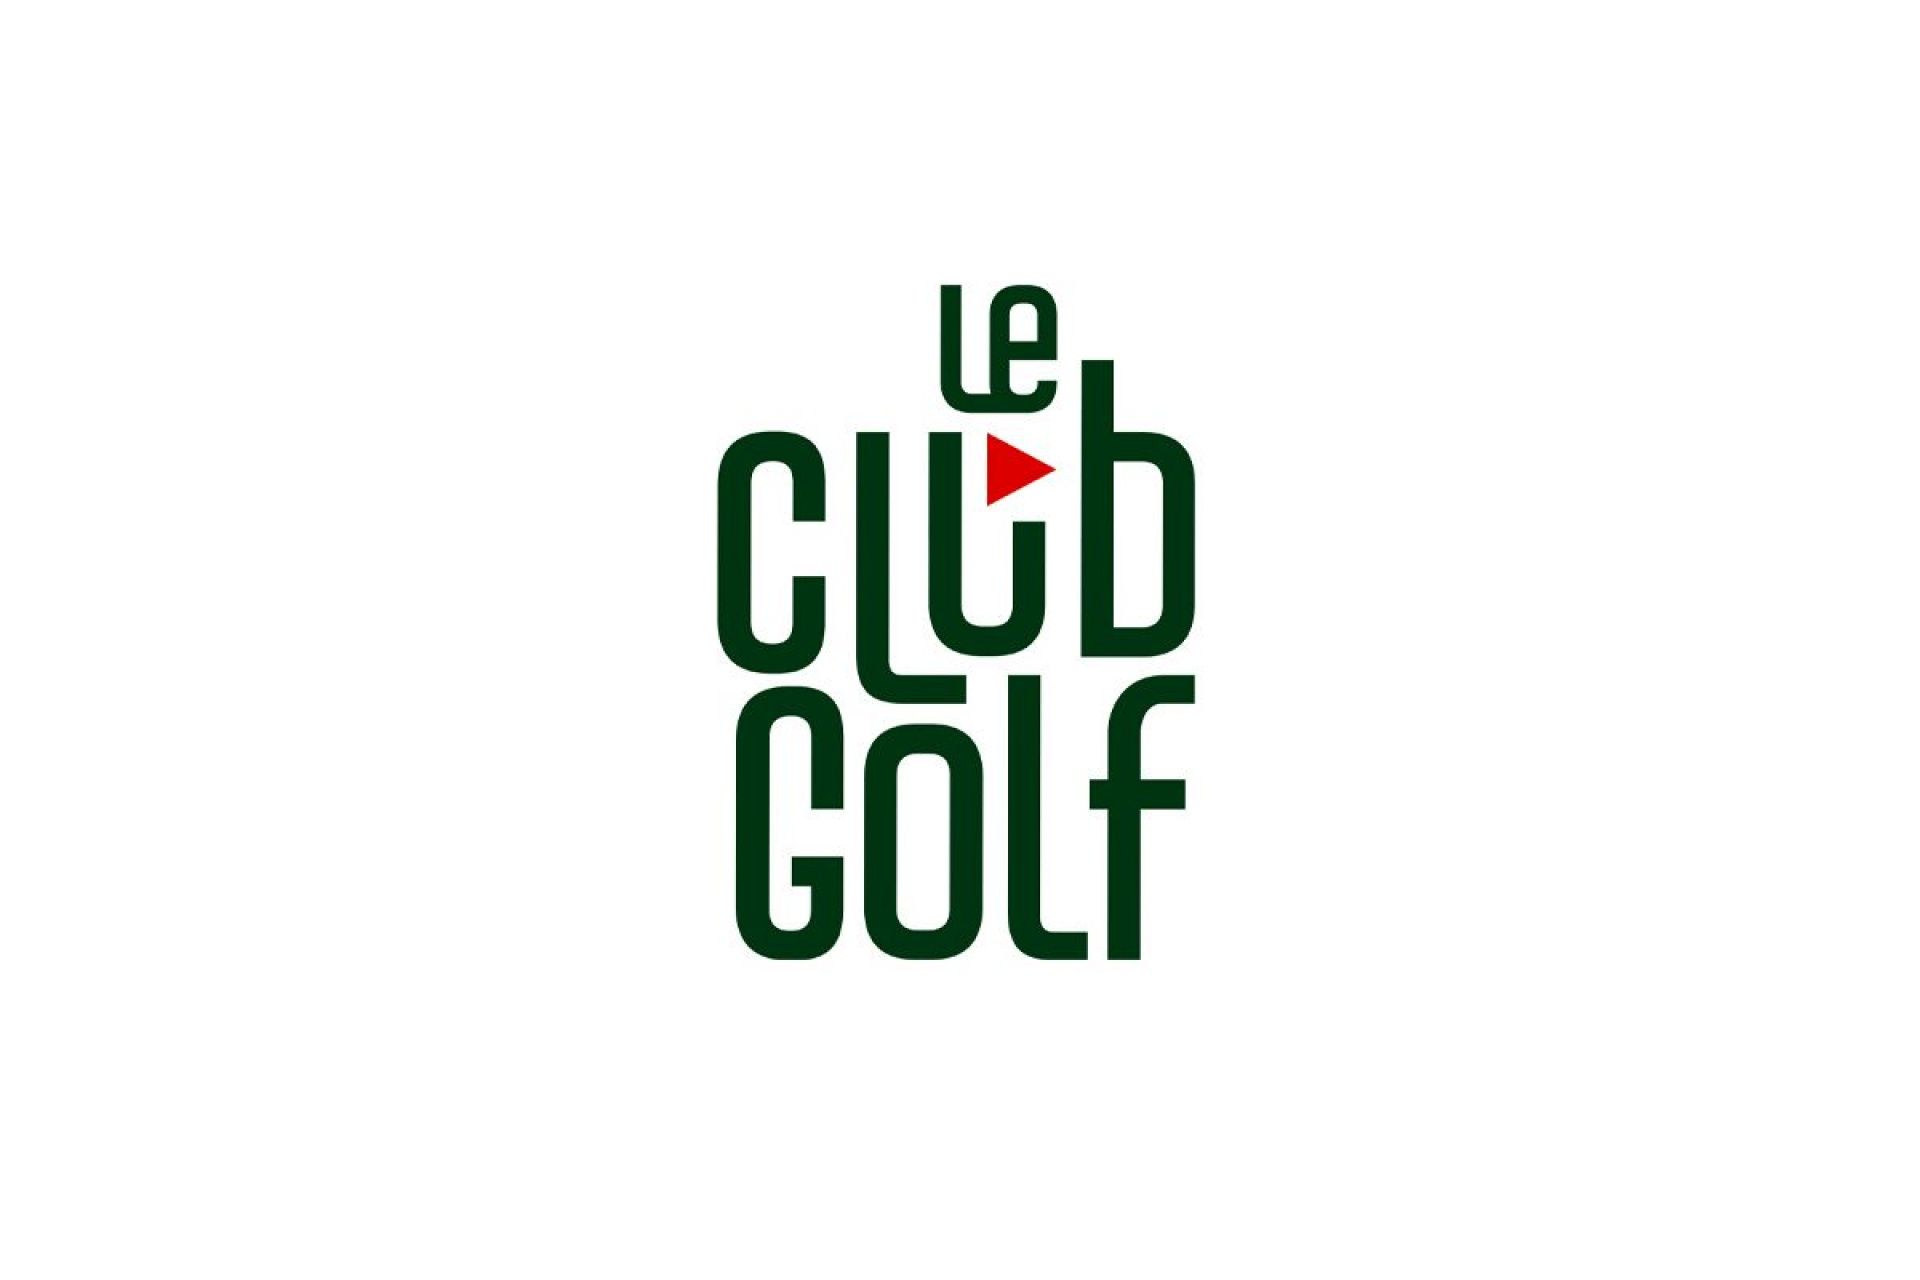 Le Club Golf